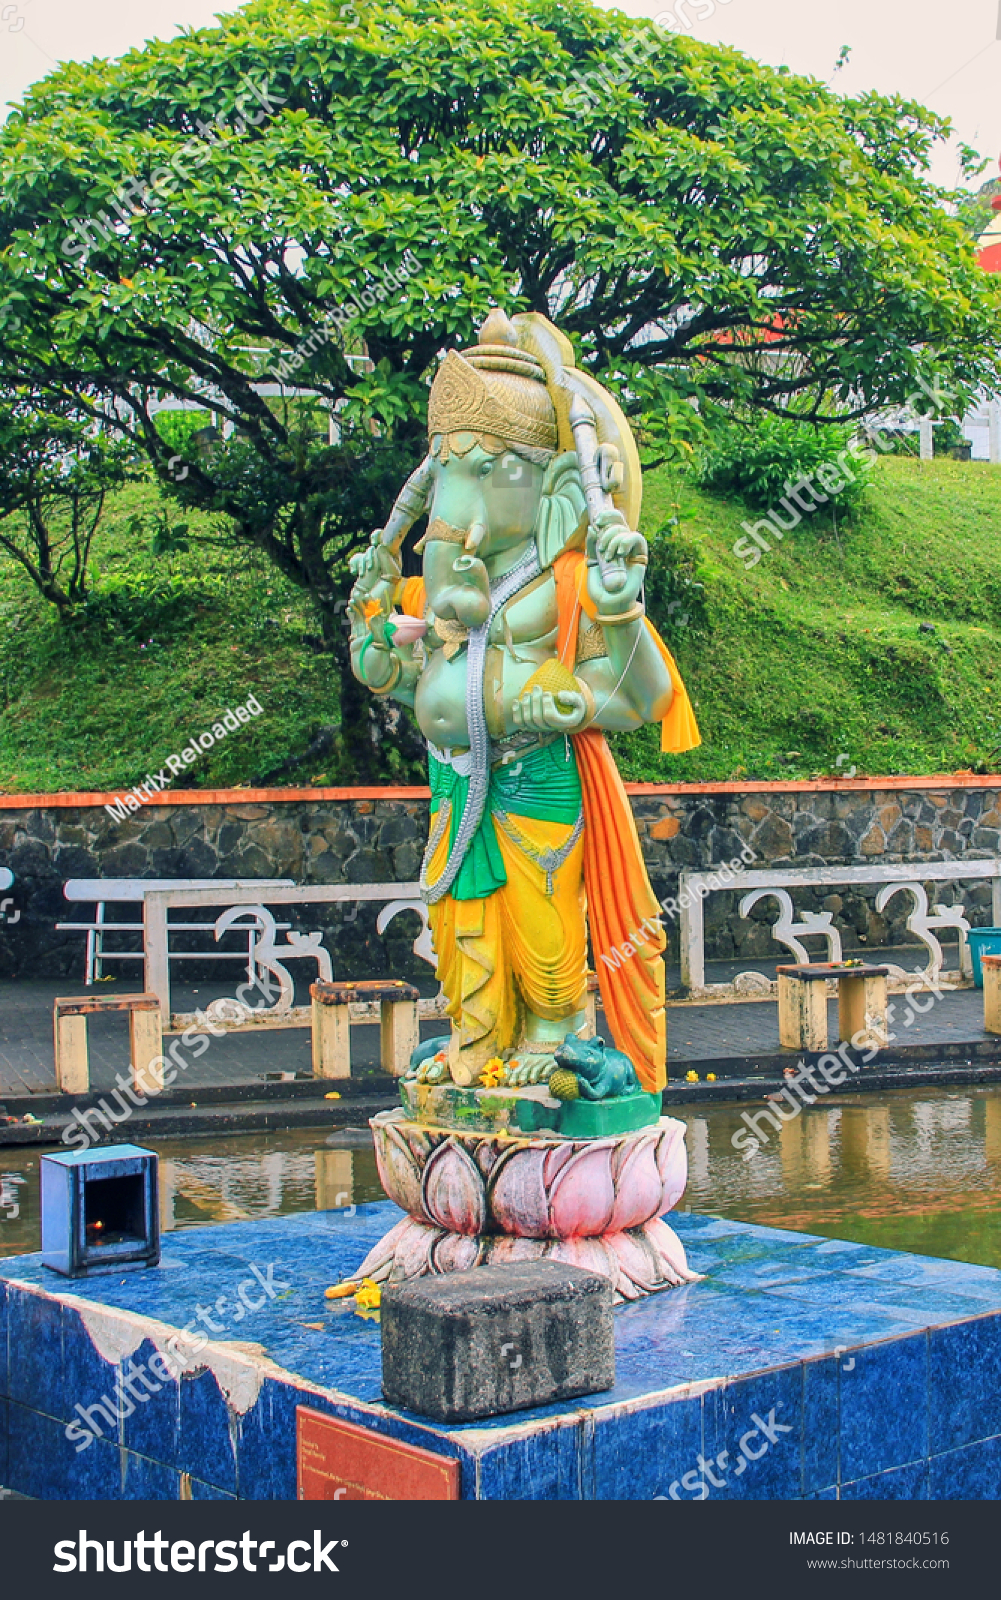 Ganesha Statue at famous Hindu temple at Grand Bassin lake, Mauritius,Africa #1481840516